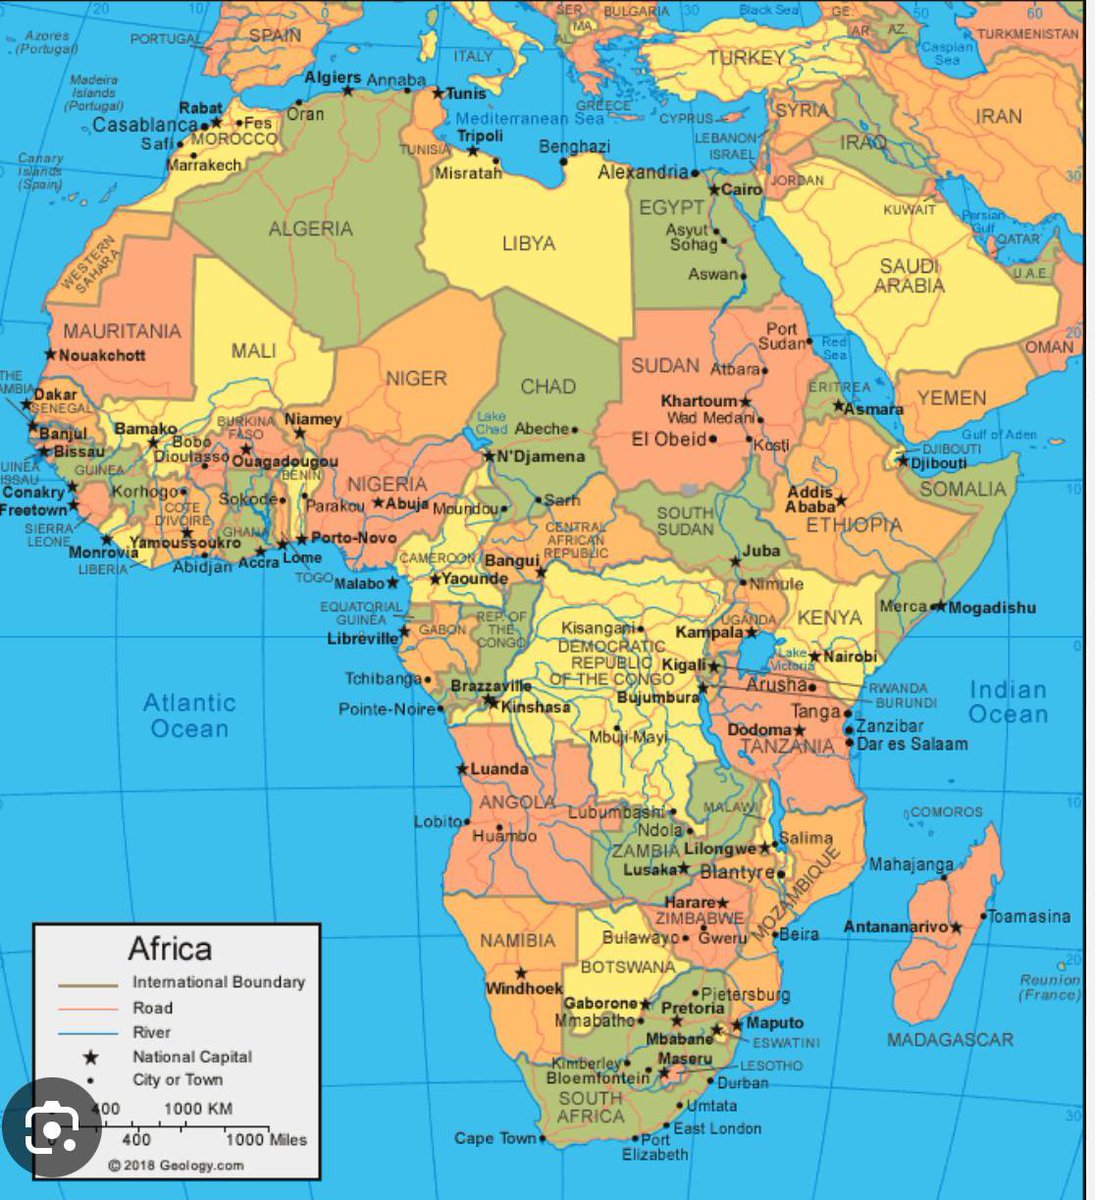 Pourquoi les pays africains subissent autant de coups d’État ? 67 coups d’État au cours des 50 dernières années dans 26 pays, dont 16 sont encore sous l’influence française

Il existe un «impôt colonial» dans 14 pays qui étaient des colonies françaises, entraînant des paiements